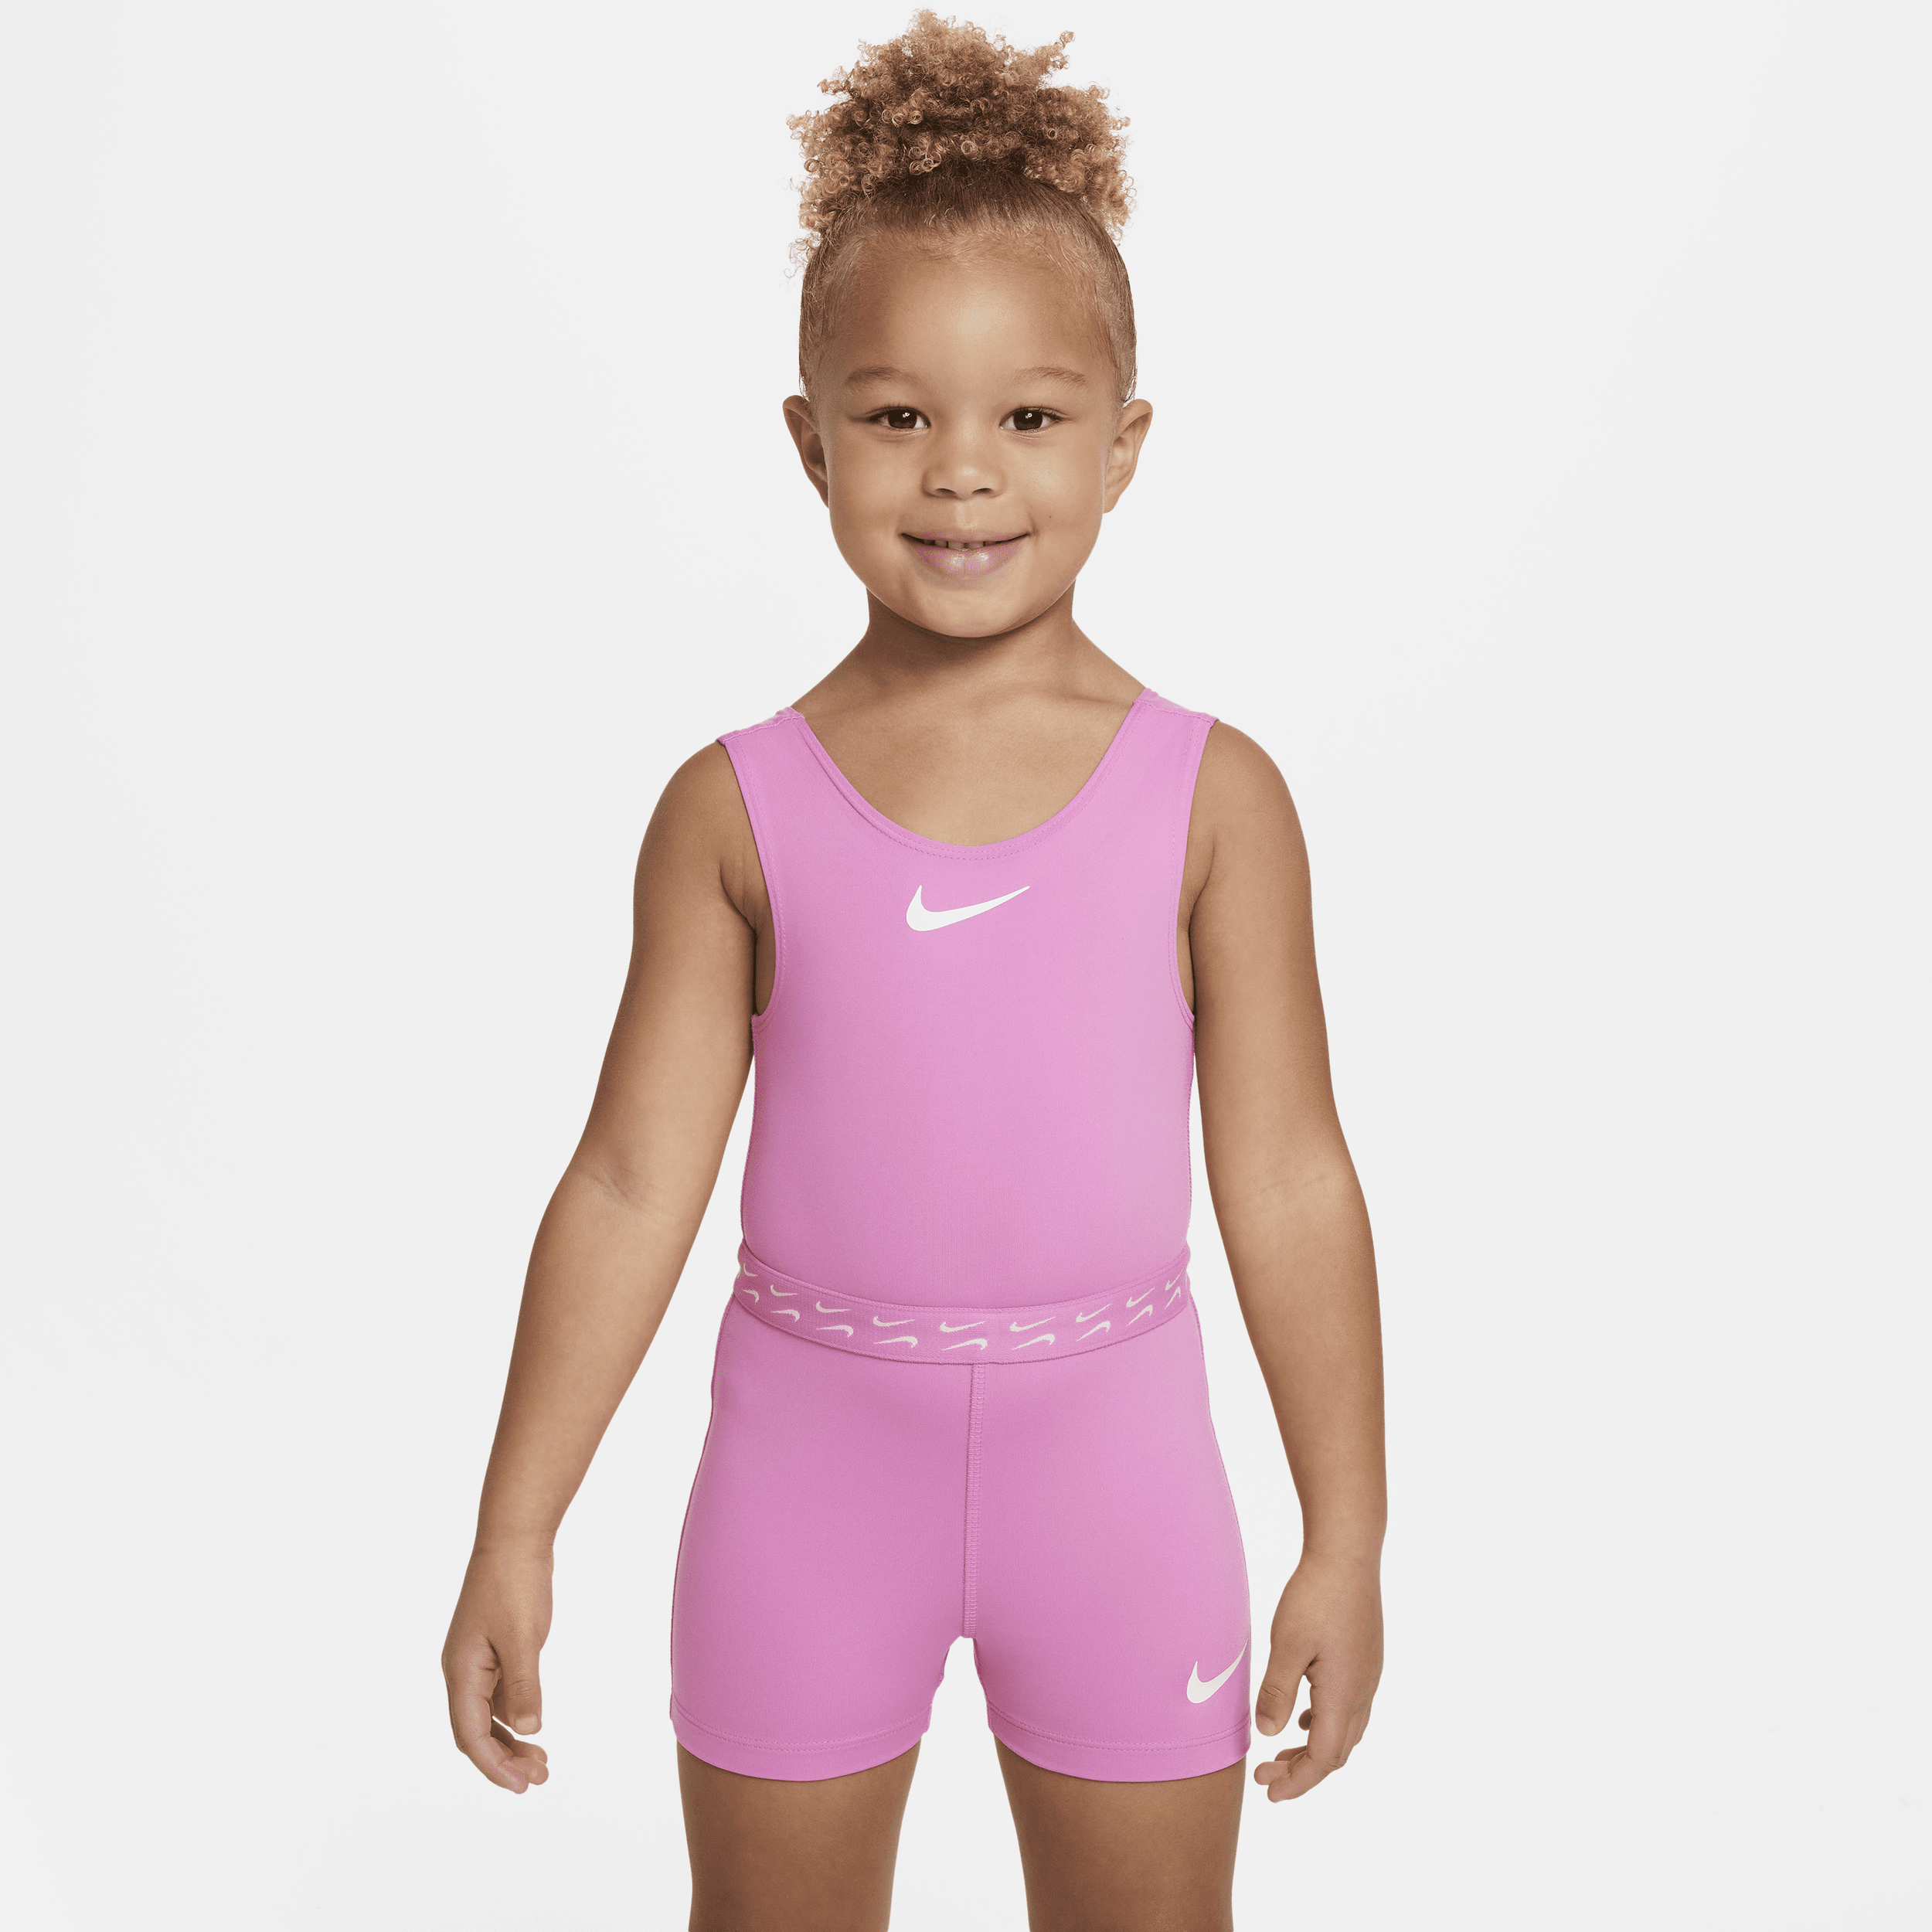 Nike Babies' Dri-fit Toddler Unitard In Pink